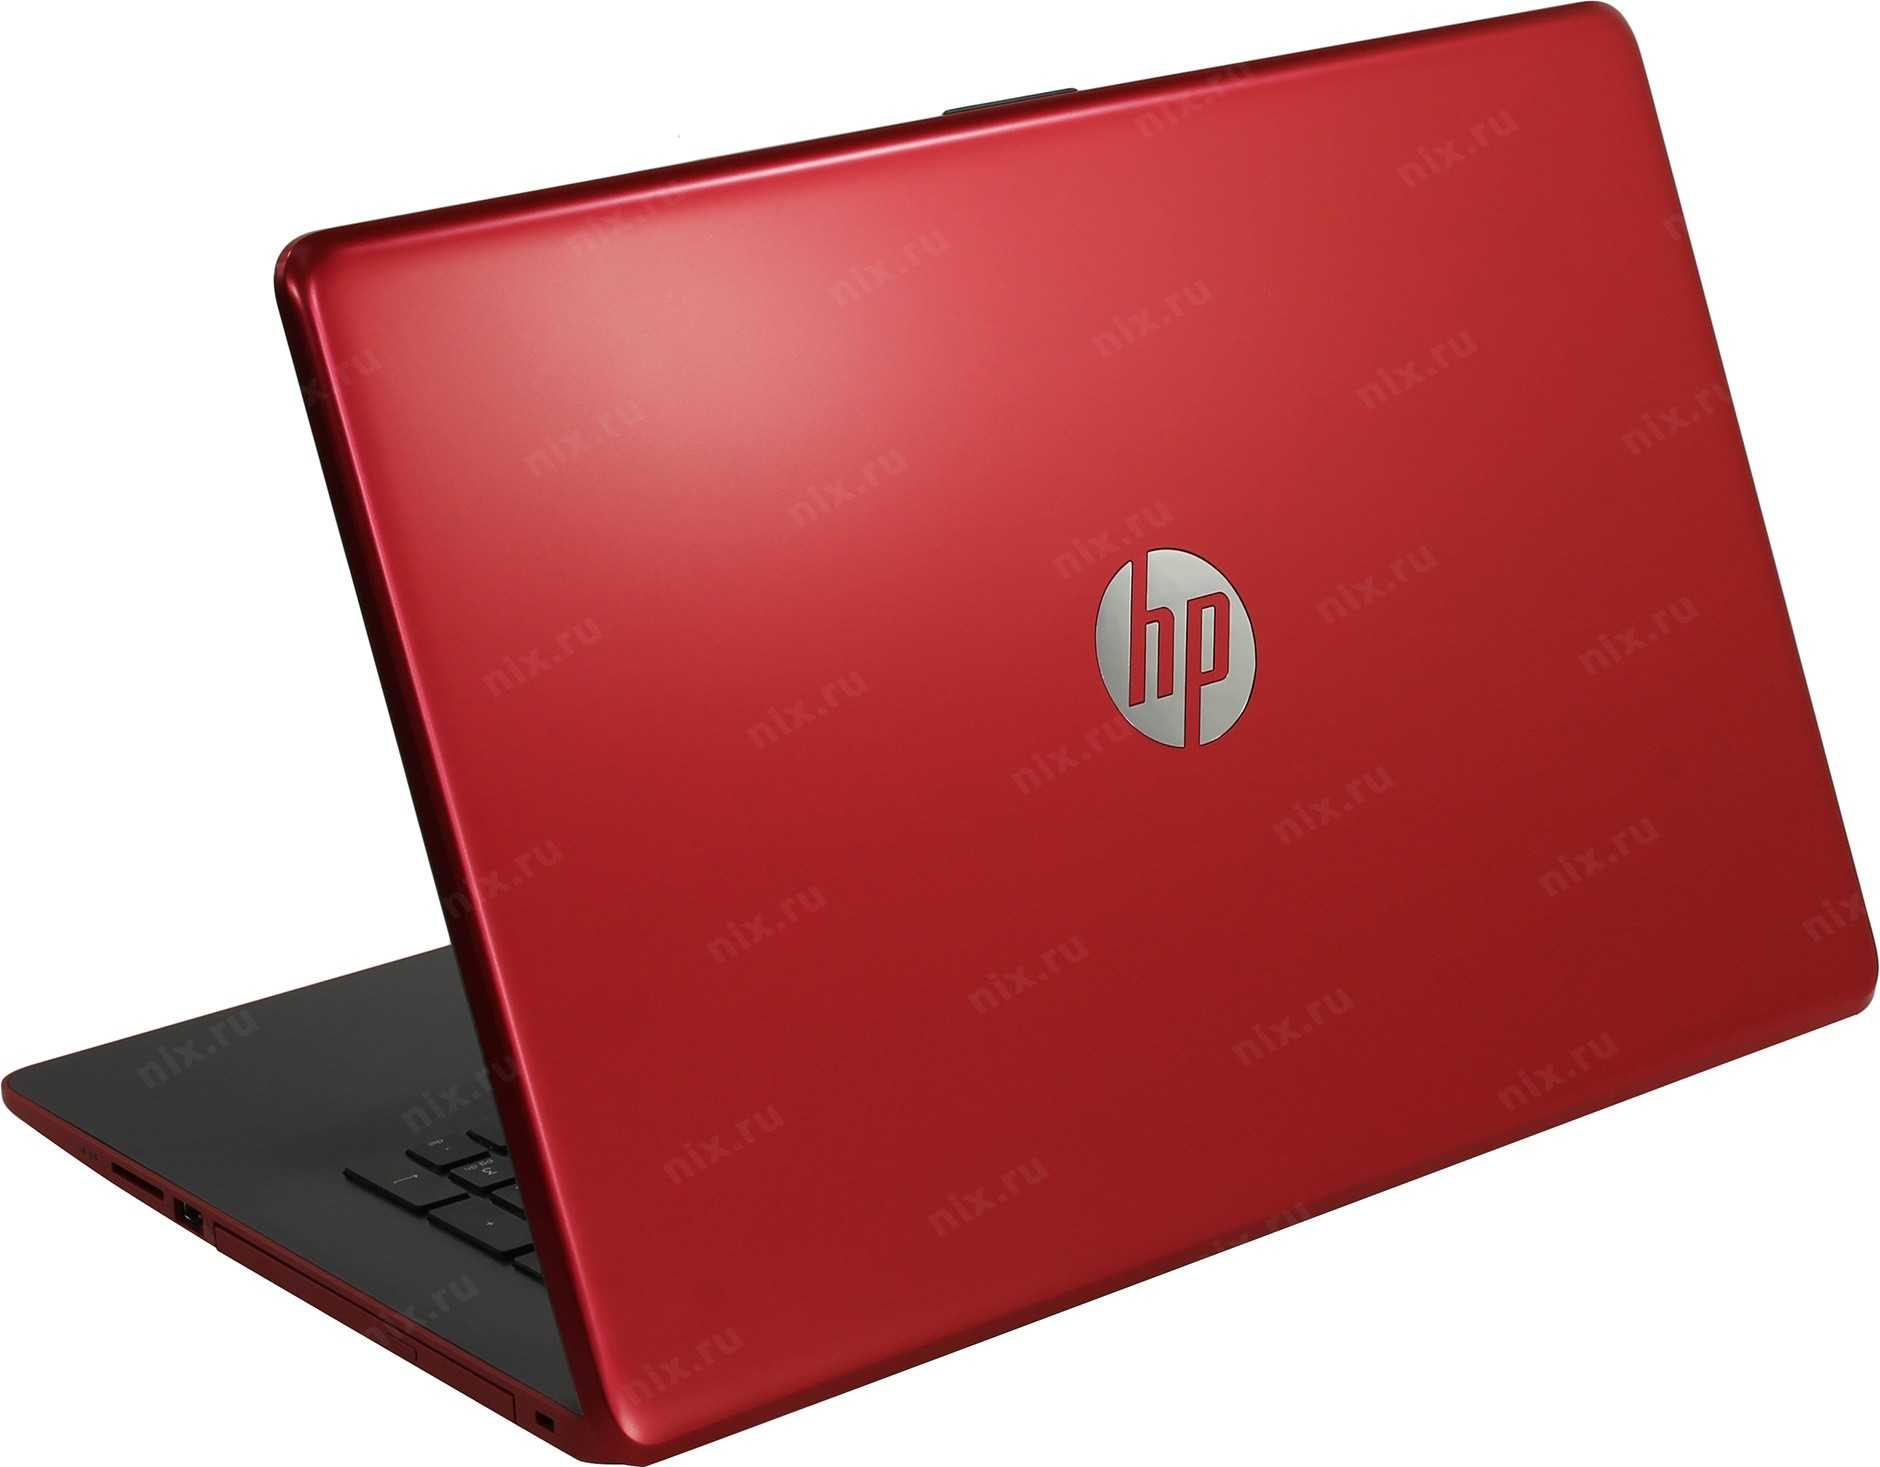 Обзор ноутбука hp - 15-bs165ur - цена, характеристики, стоит ли покупать? | pacheco